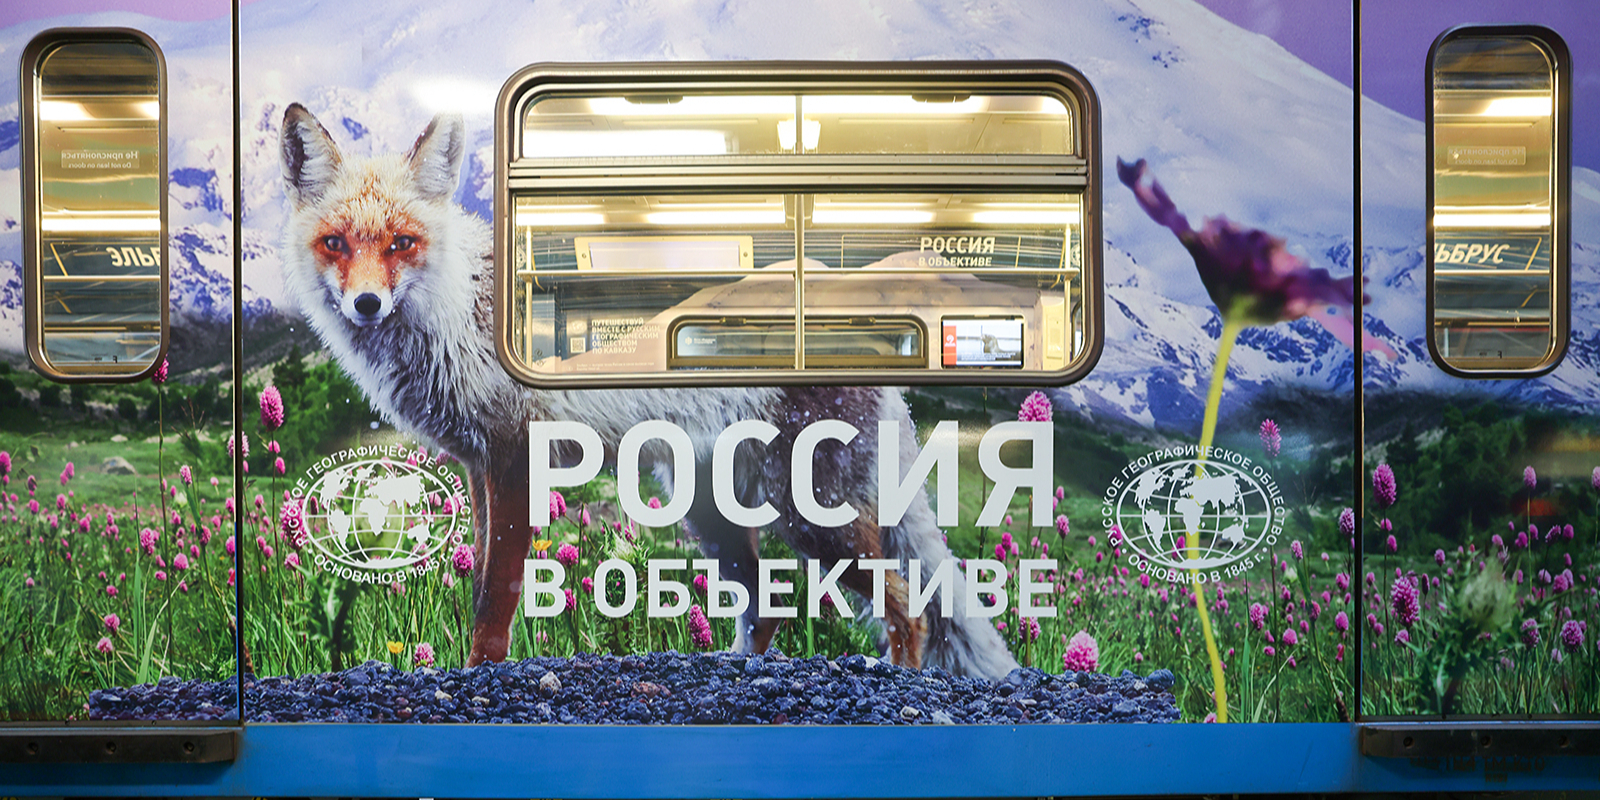 Железнодорожный состав был создан Департаментом транспорта и развития дорожно-транспортной инфраструктуры Москвы совместно с Русским географическим обществом. Фото: сайт мэра Москвы